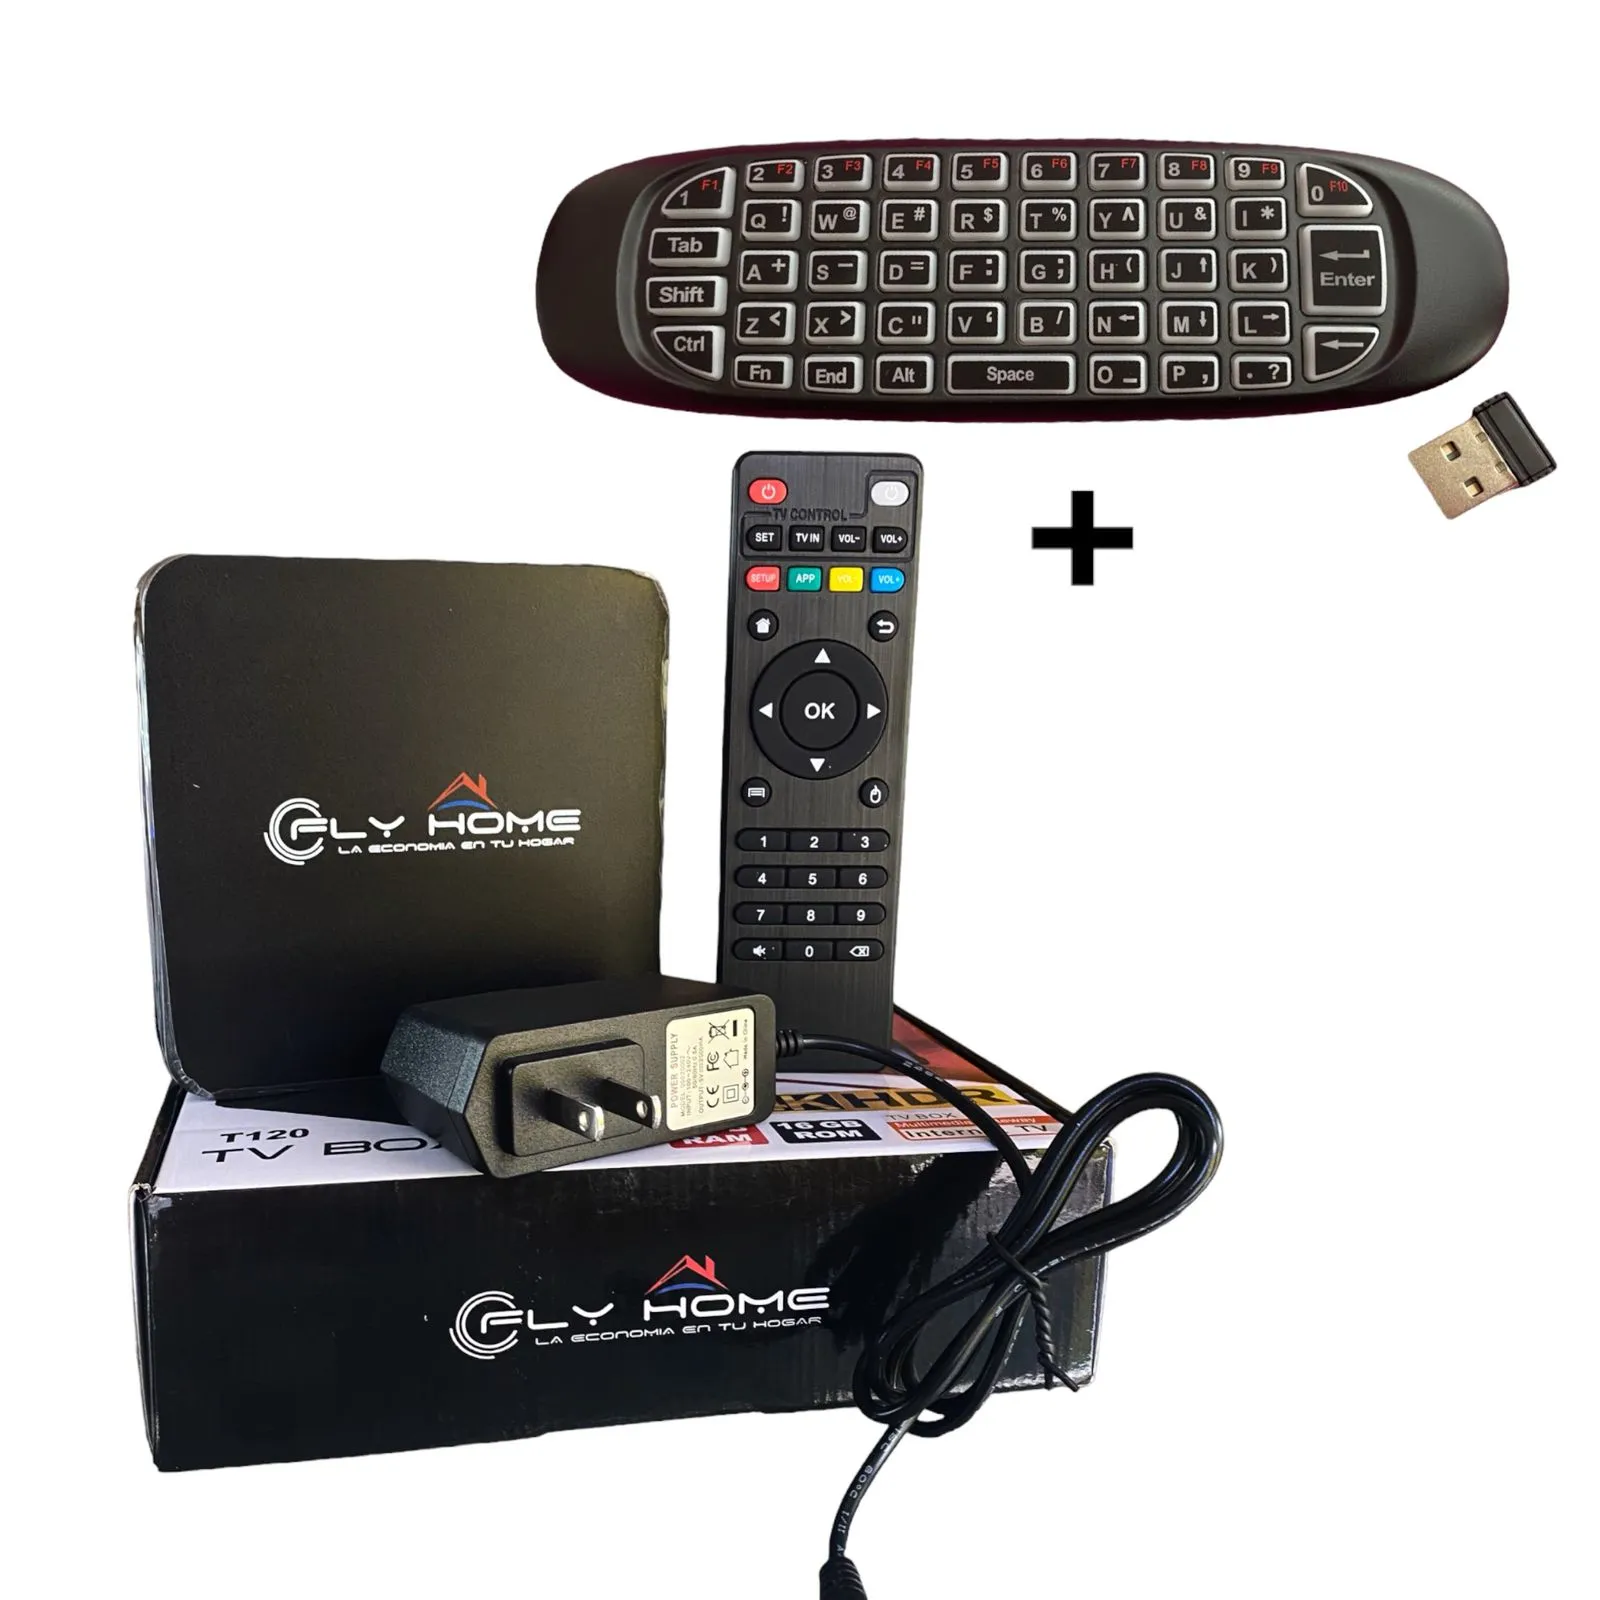 Electronica LUCAS - SMART TV BOX 4K. Un aparato similar al chromecast, con  Android, memoria interna para descargar las aplicaciones a utilizar,  soporta 4k, cuatro puertos usb, control remoto y muy fácil